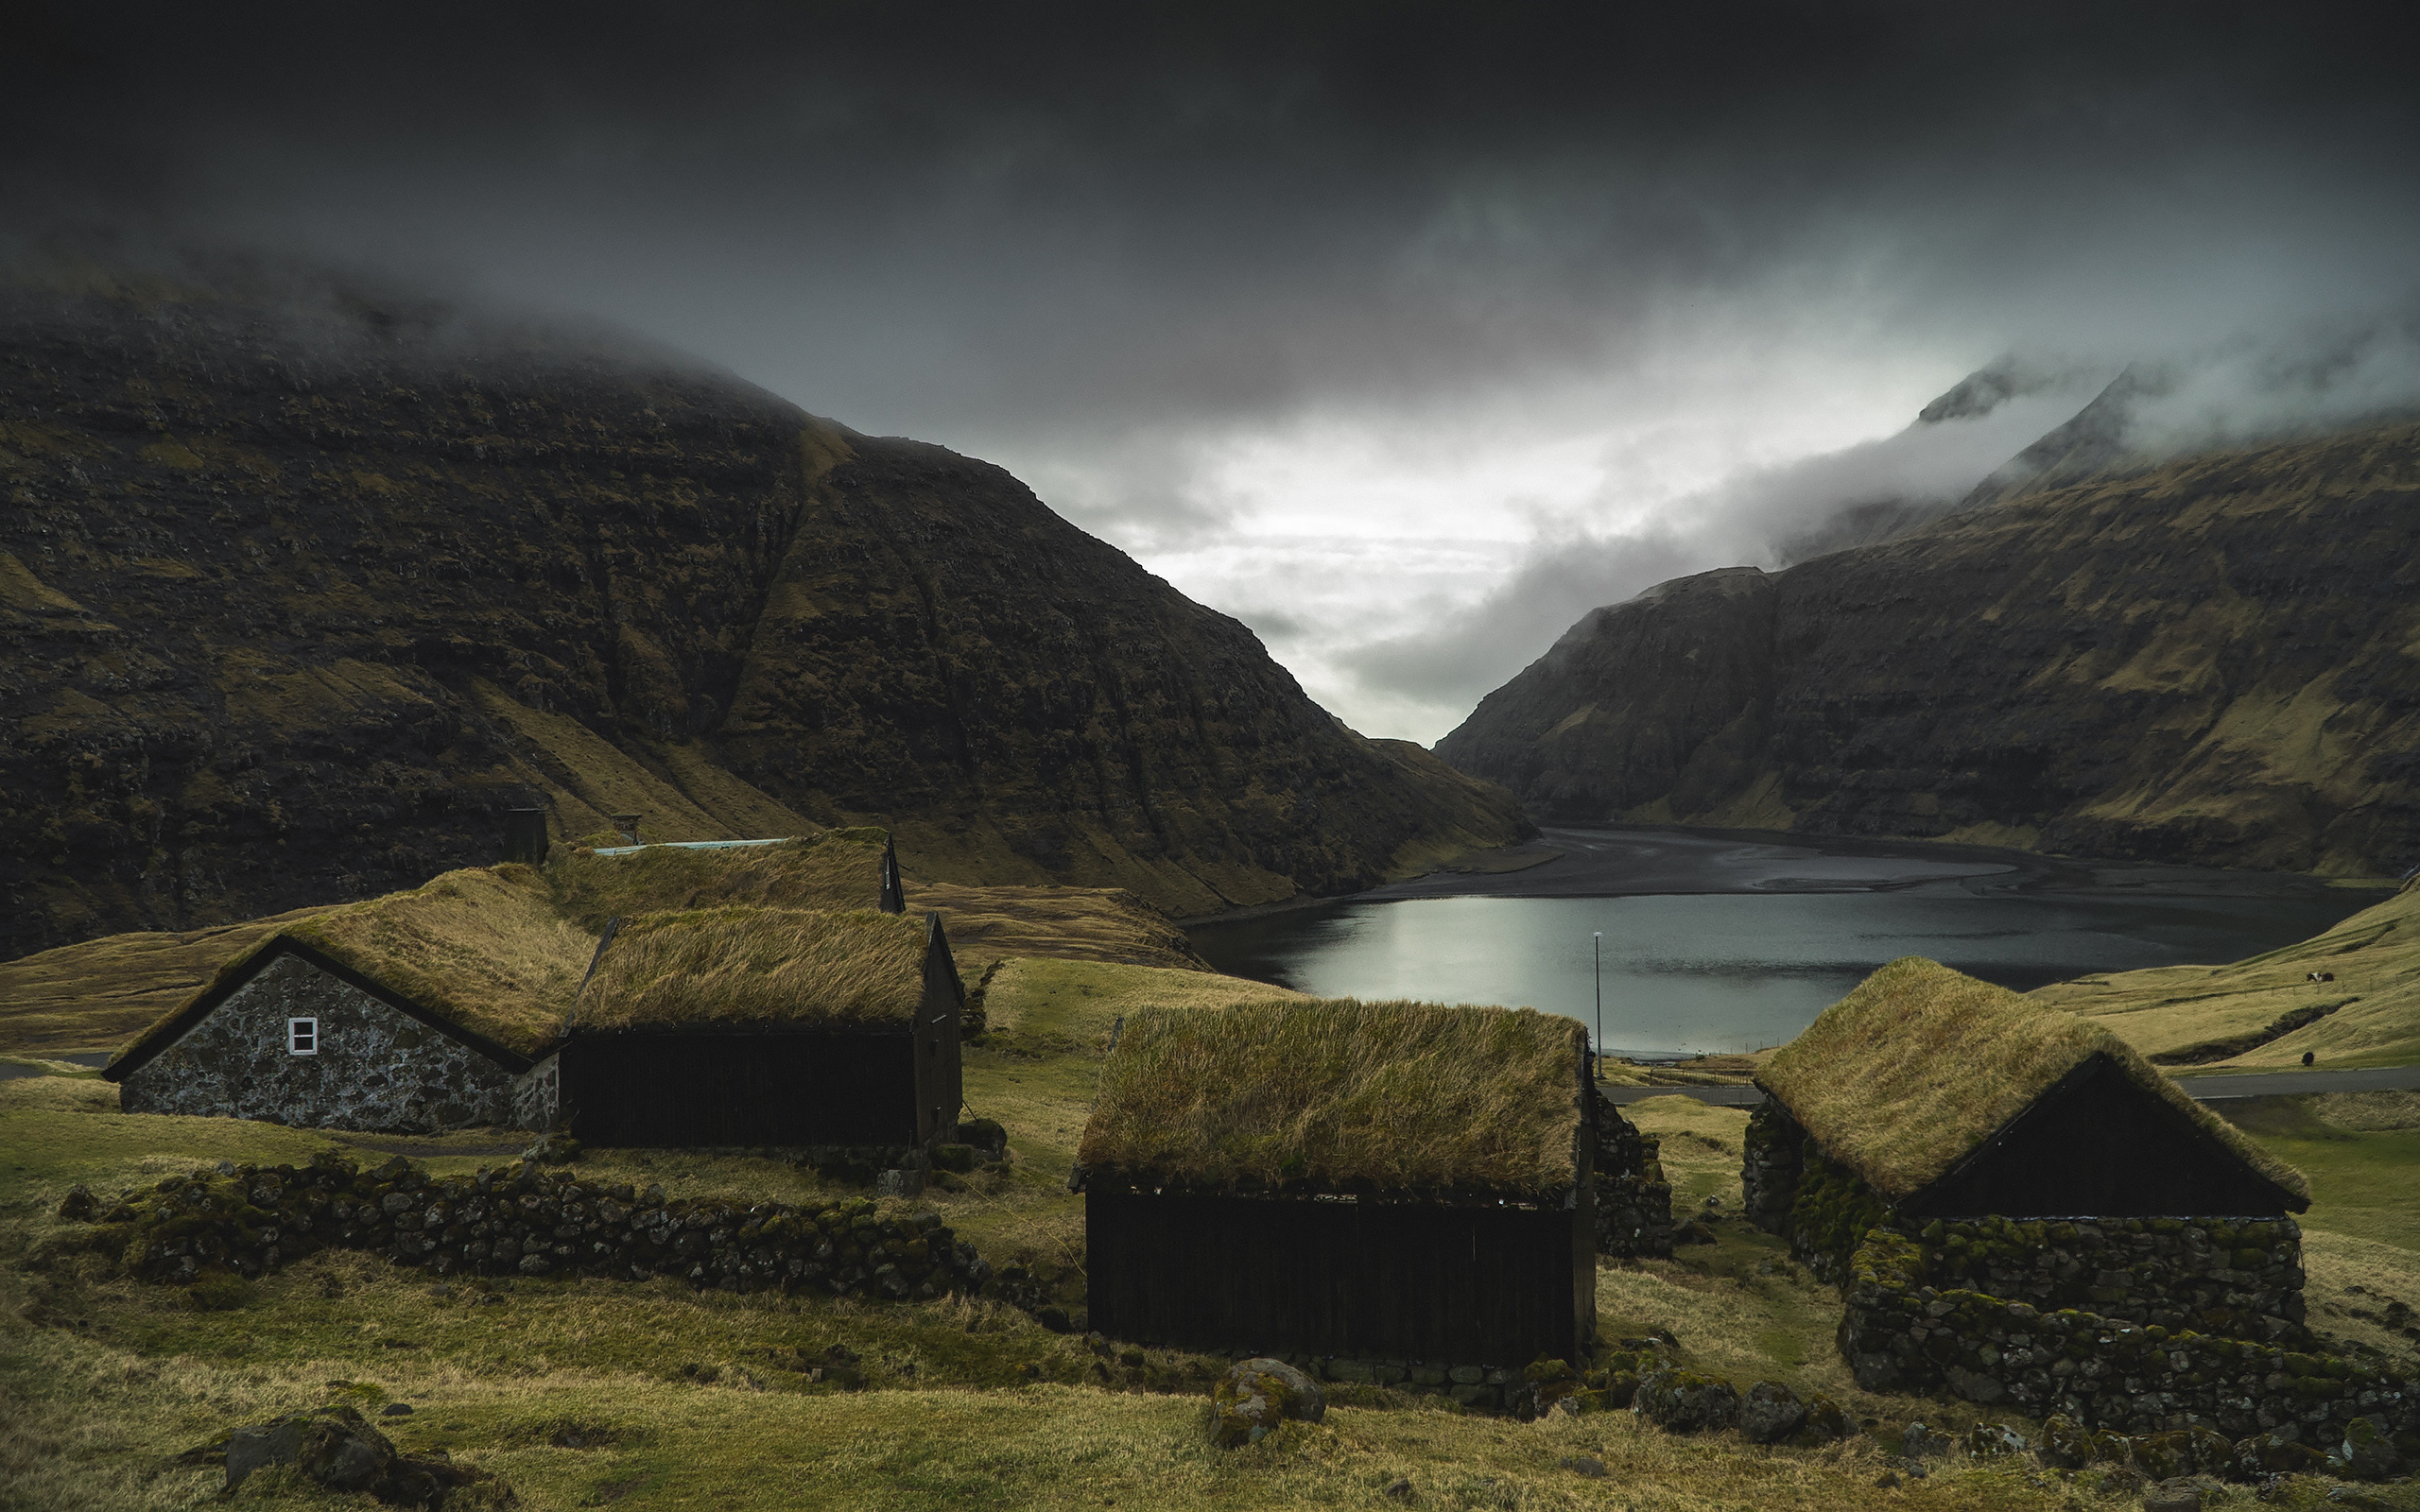 Faroe Islands, Kingdom Of Denmark - Faroe Islands , HD Wallpaper & Backgrounds